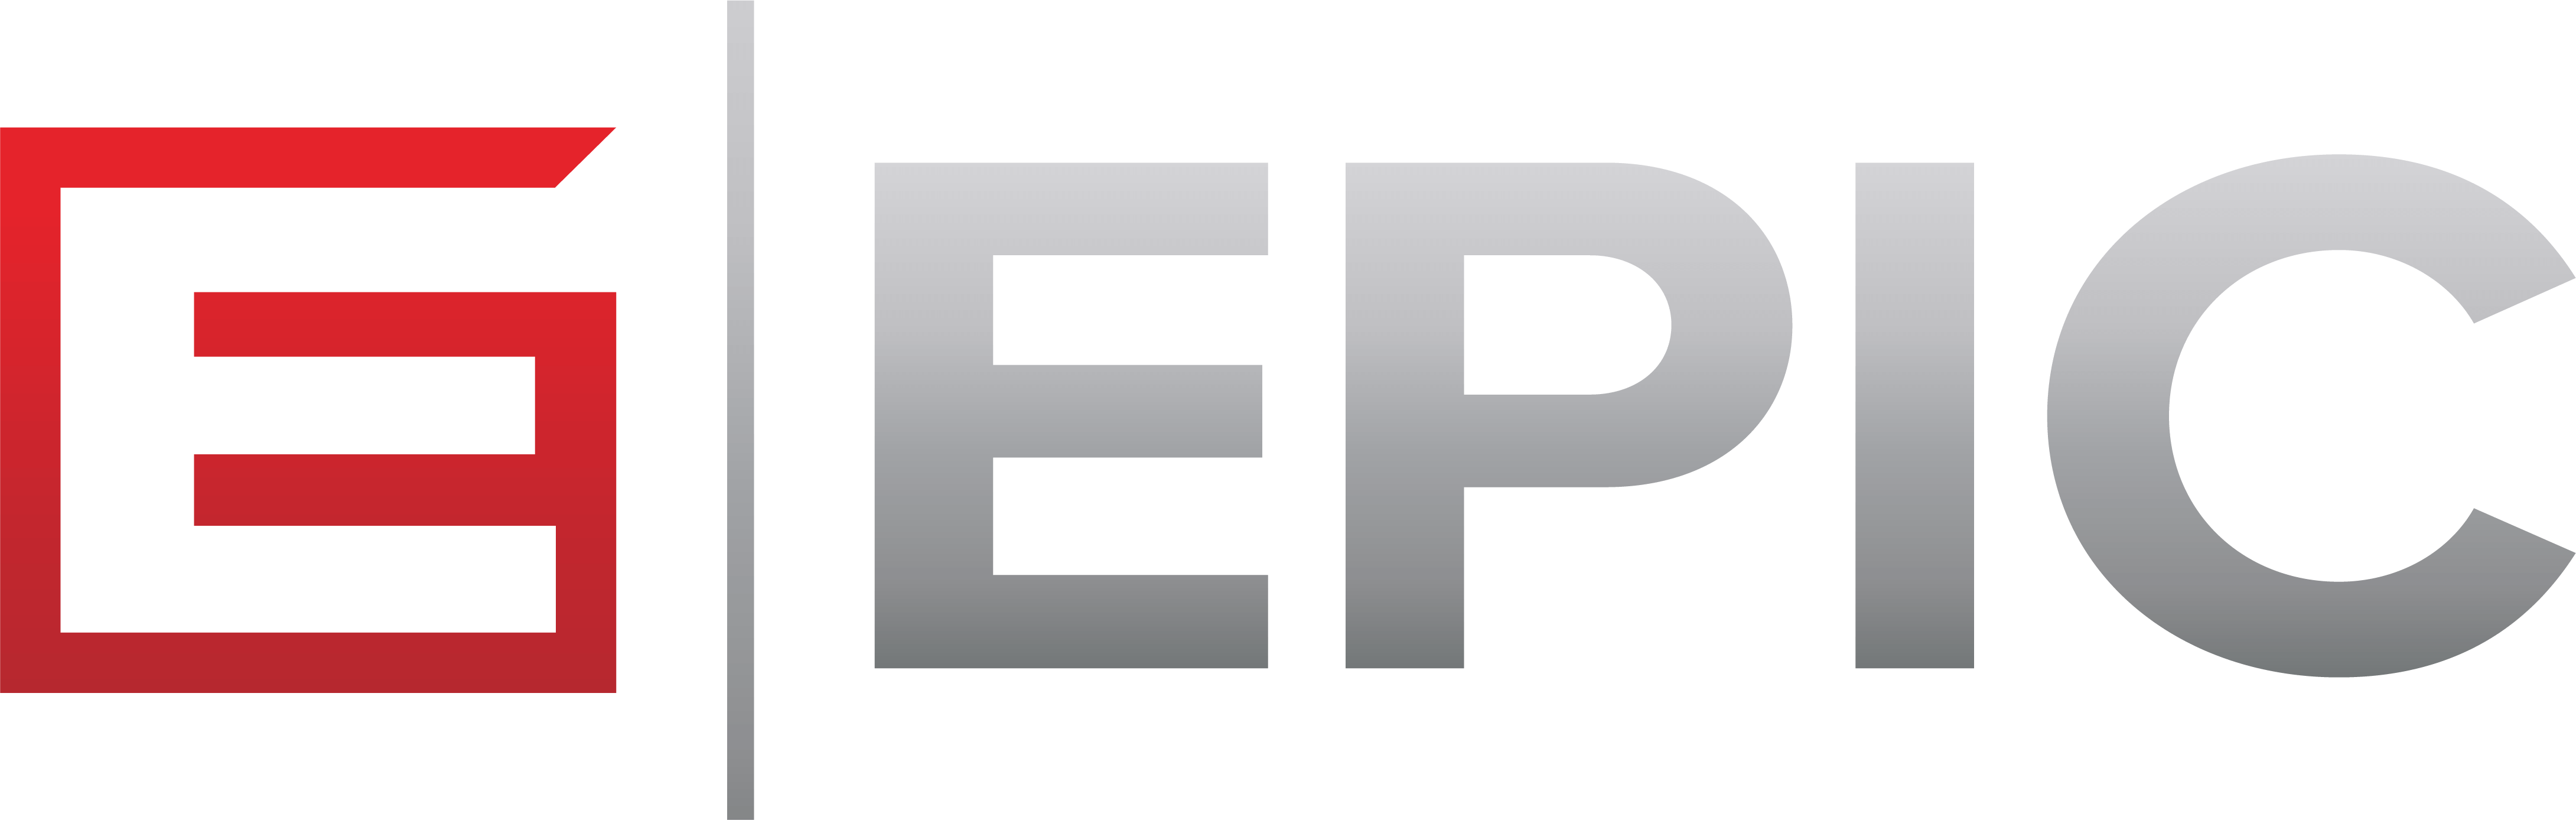 EPIC_ProximaBold - Jeff Roman